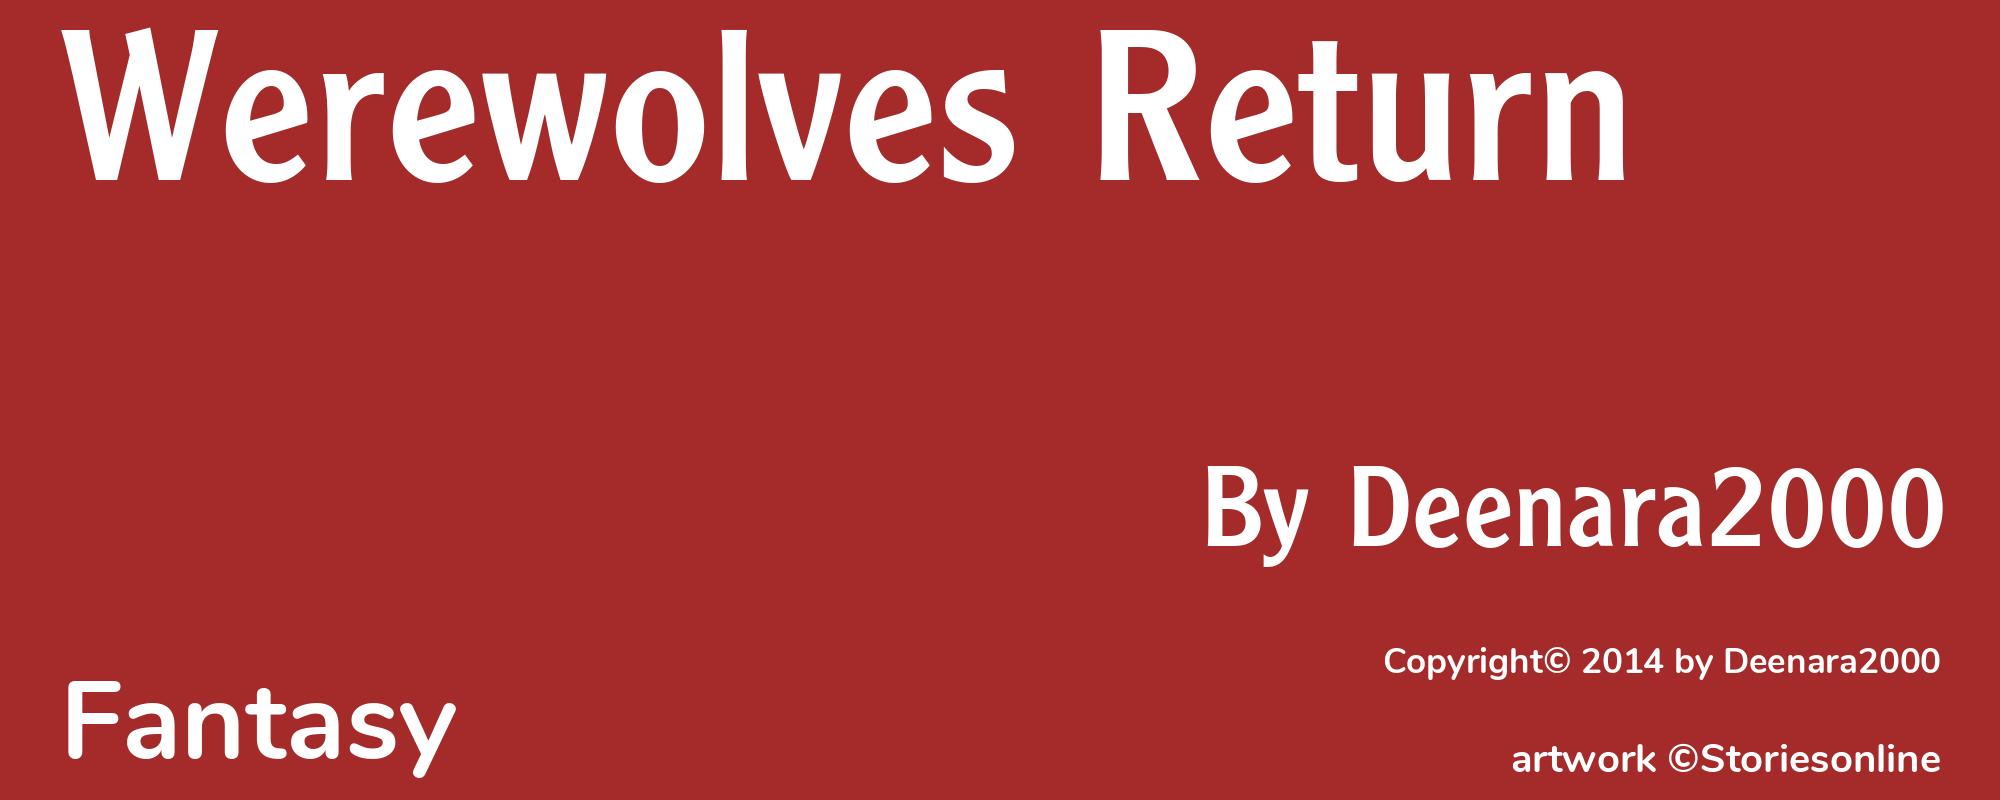 Werewolves Return - Cover